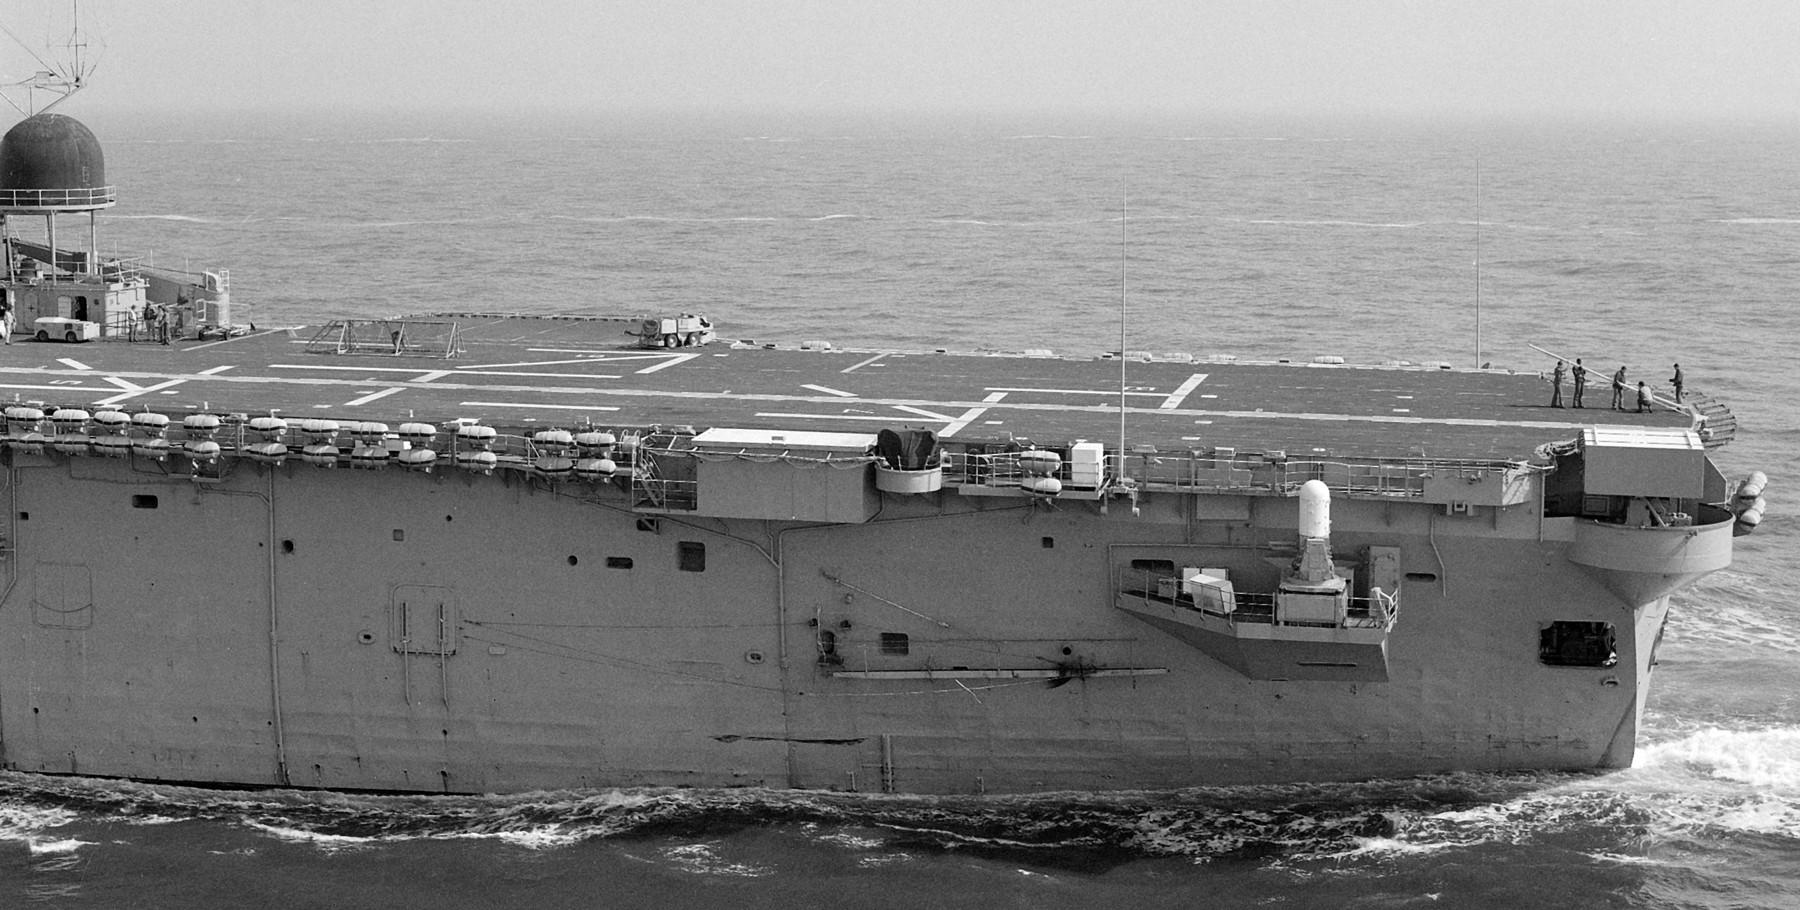 lph-7 uss guadalcanal iwo jima class amphibious assault ship landing platform helicopter us navy 34